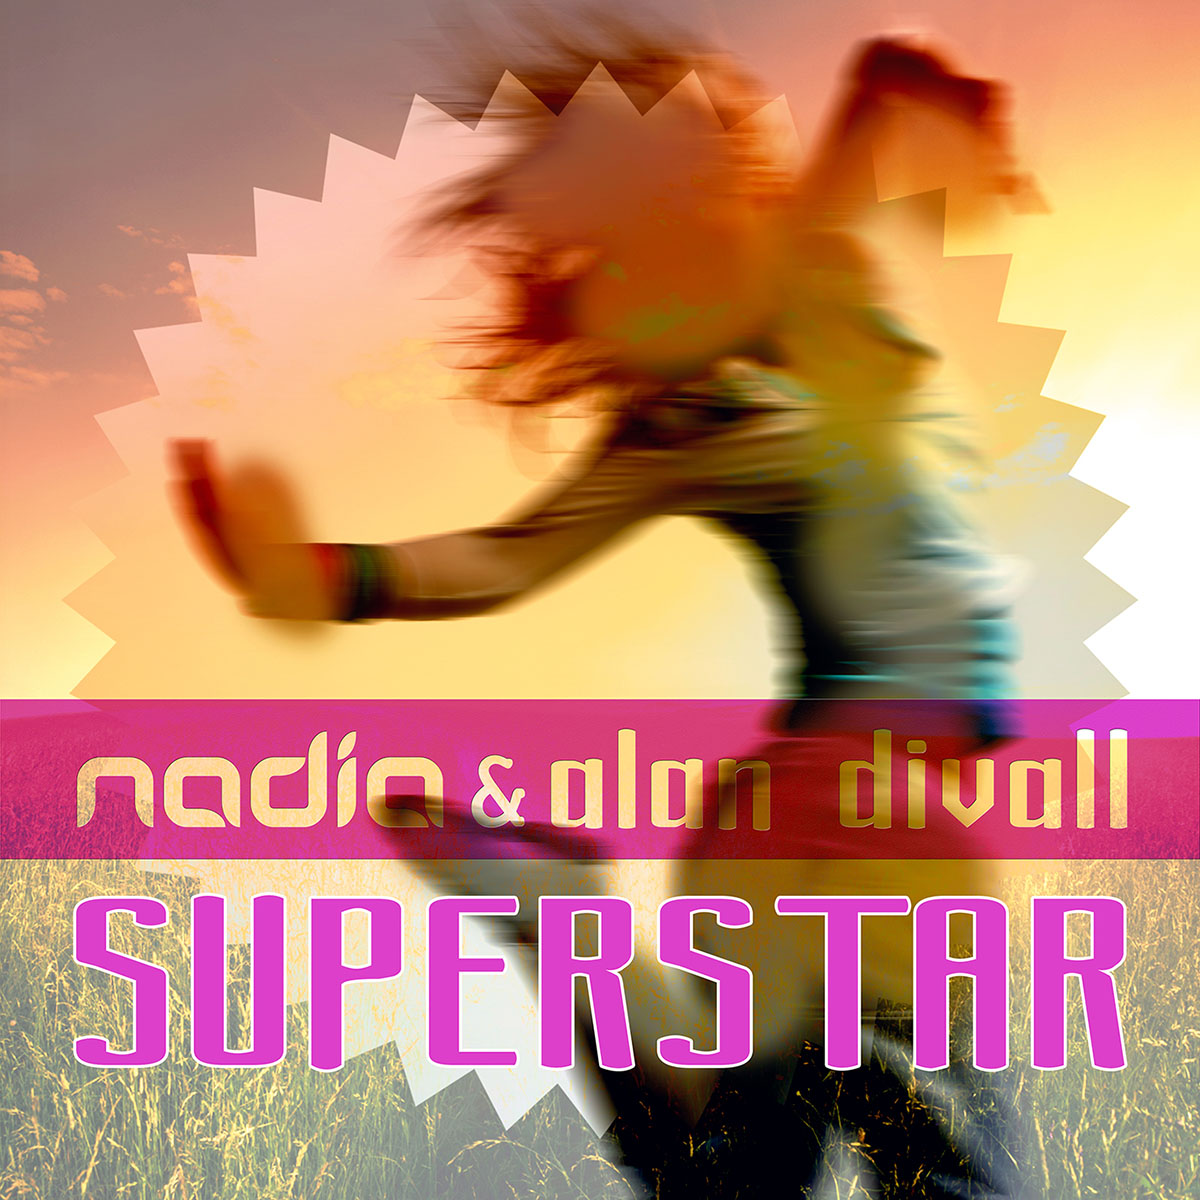 22Nadia-&-Alan-Divall–Superstar1400